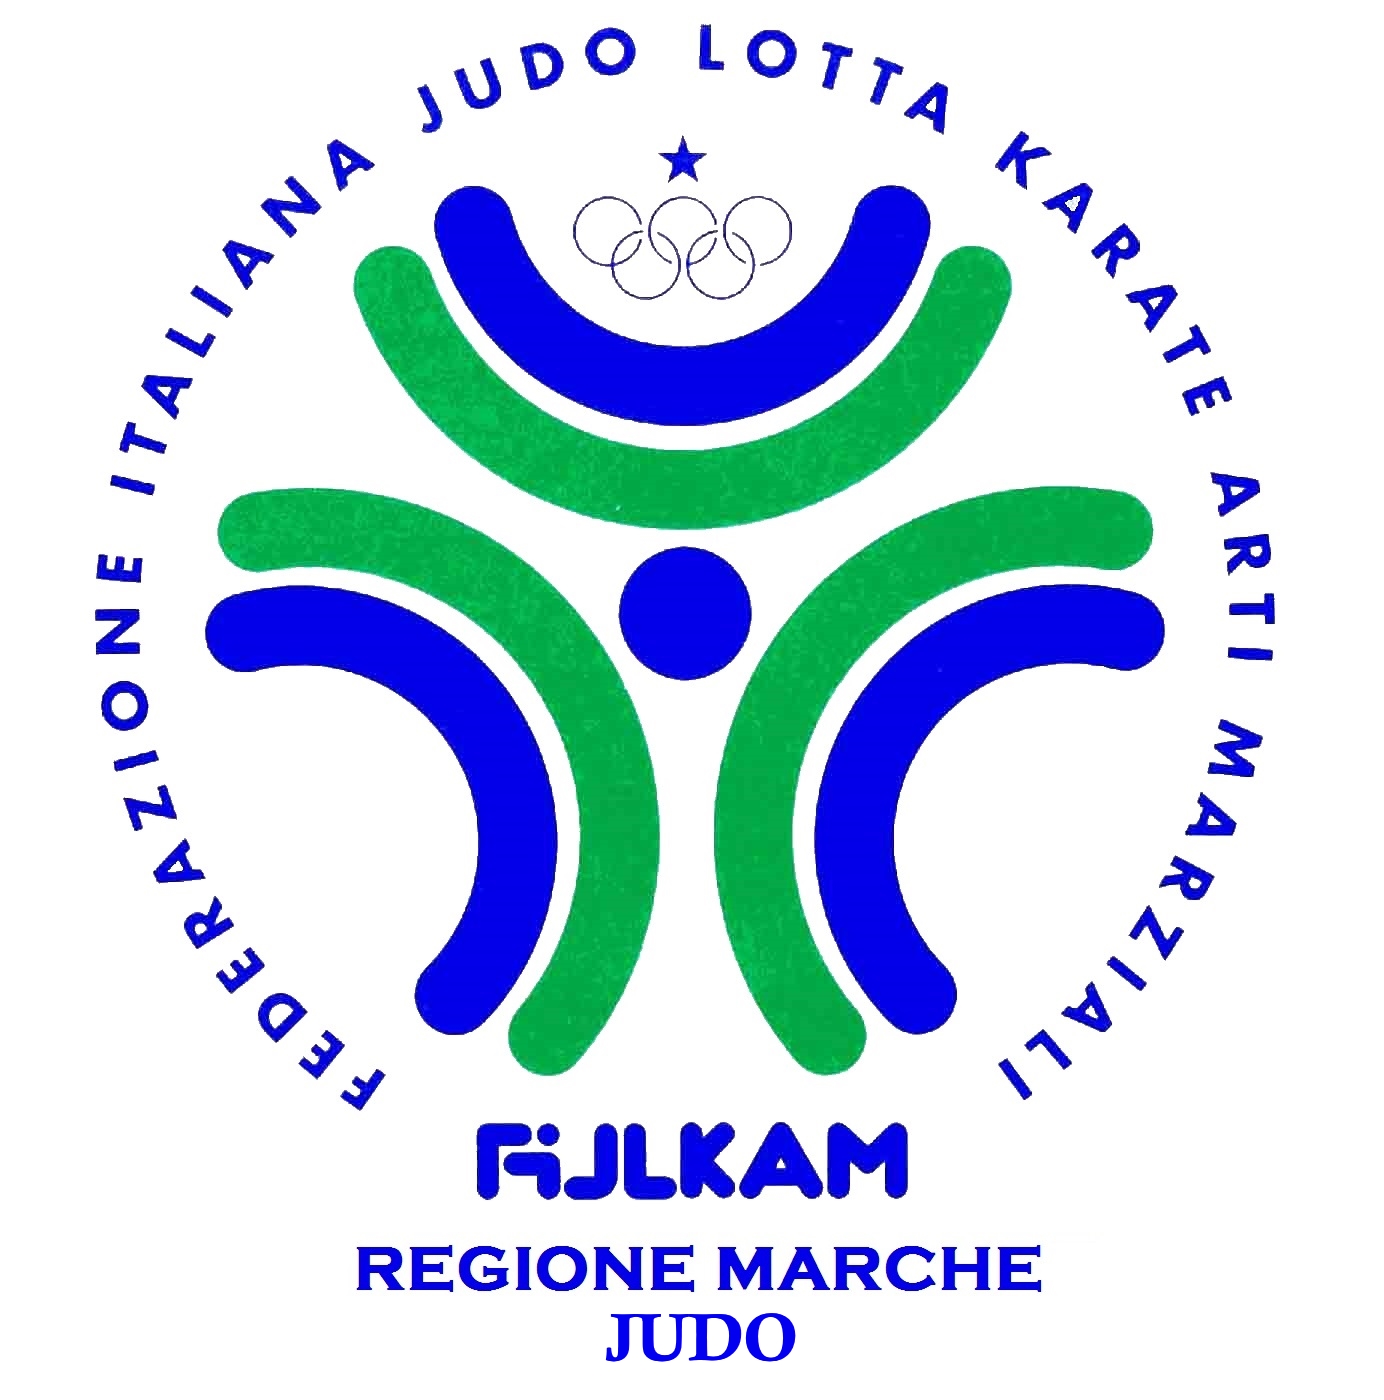 Corso Regionale per Aspiranti Arbitri e Arbitri Regionali di Judo